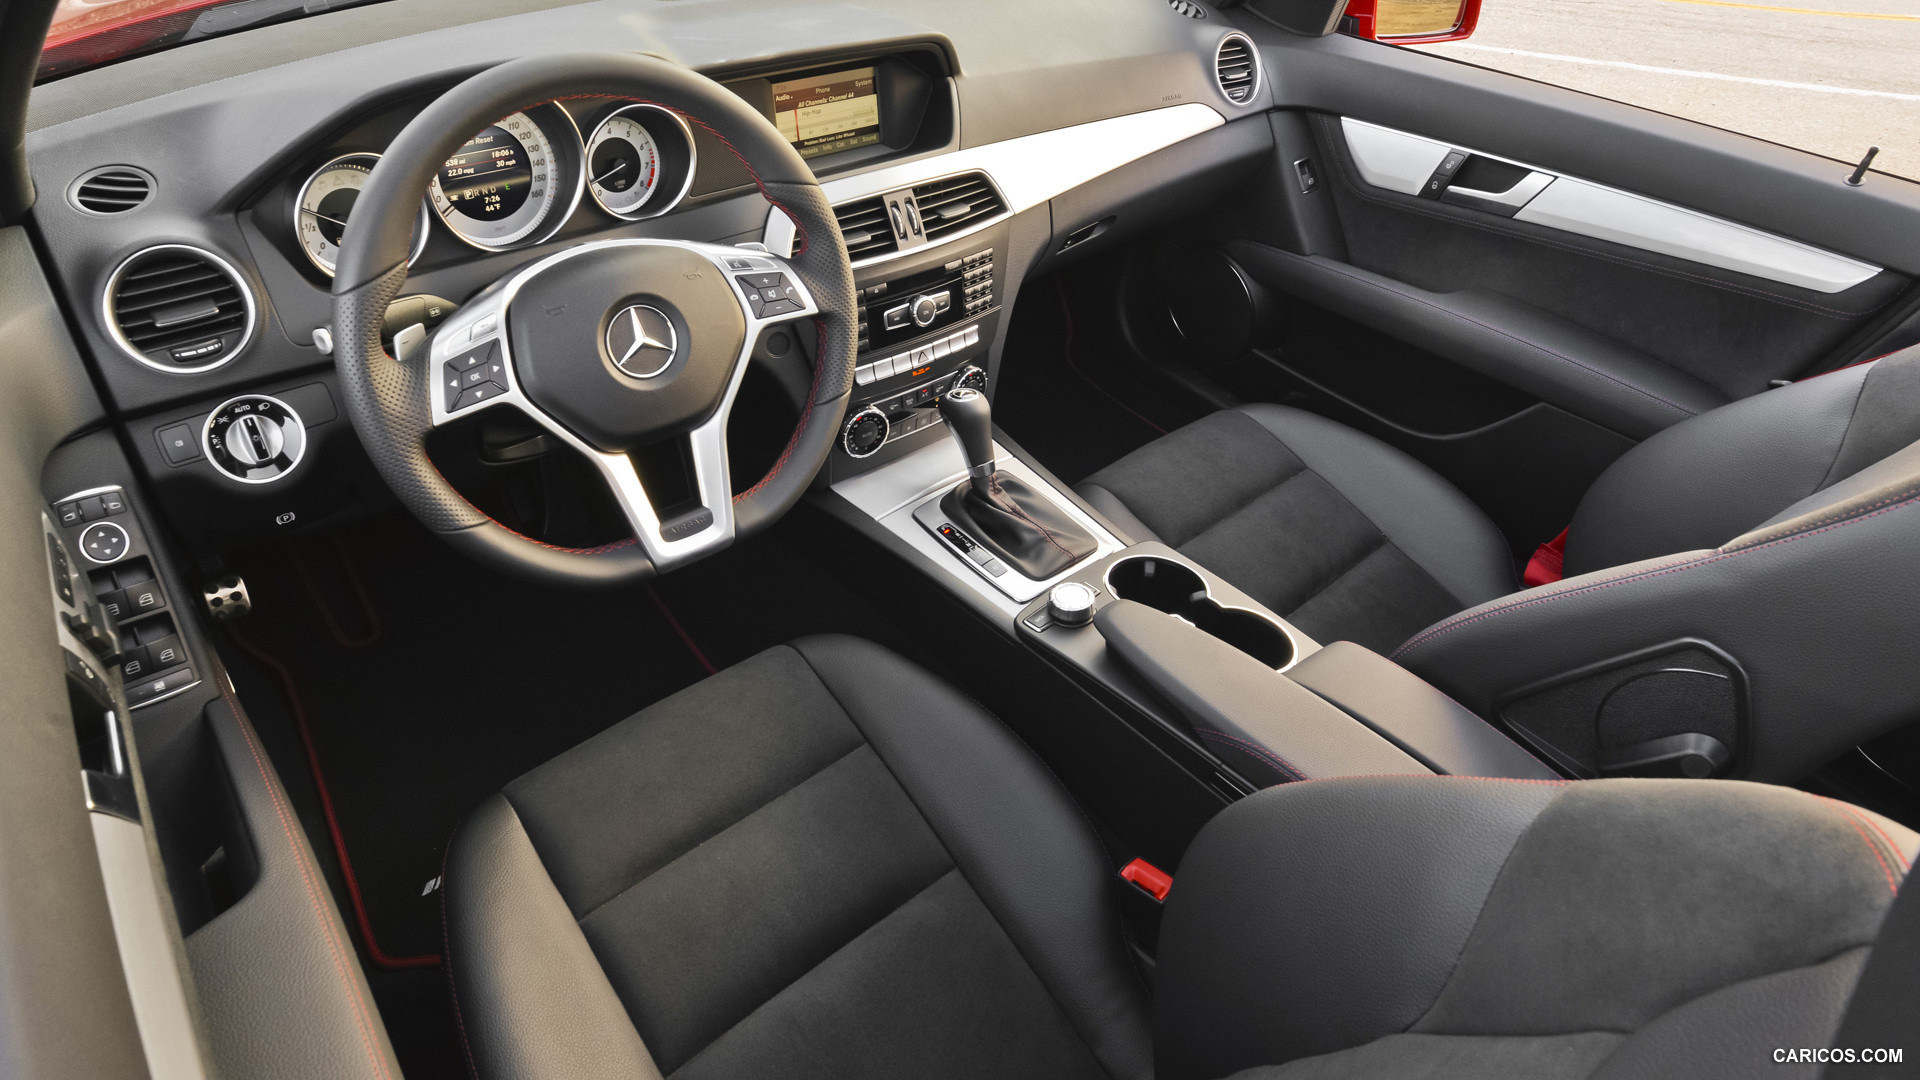 2013 Mercedes-Benz C250 Sedan Sport Package Plus  - Interior, #114 of 122